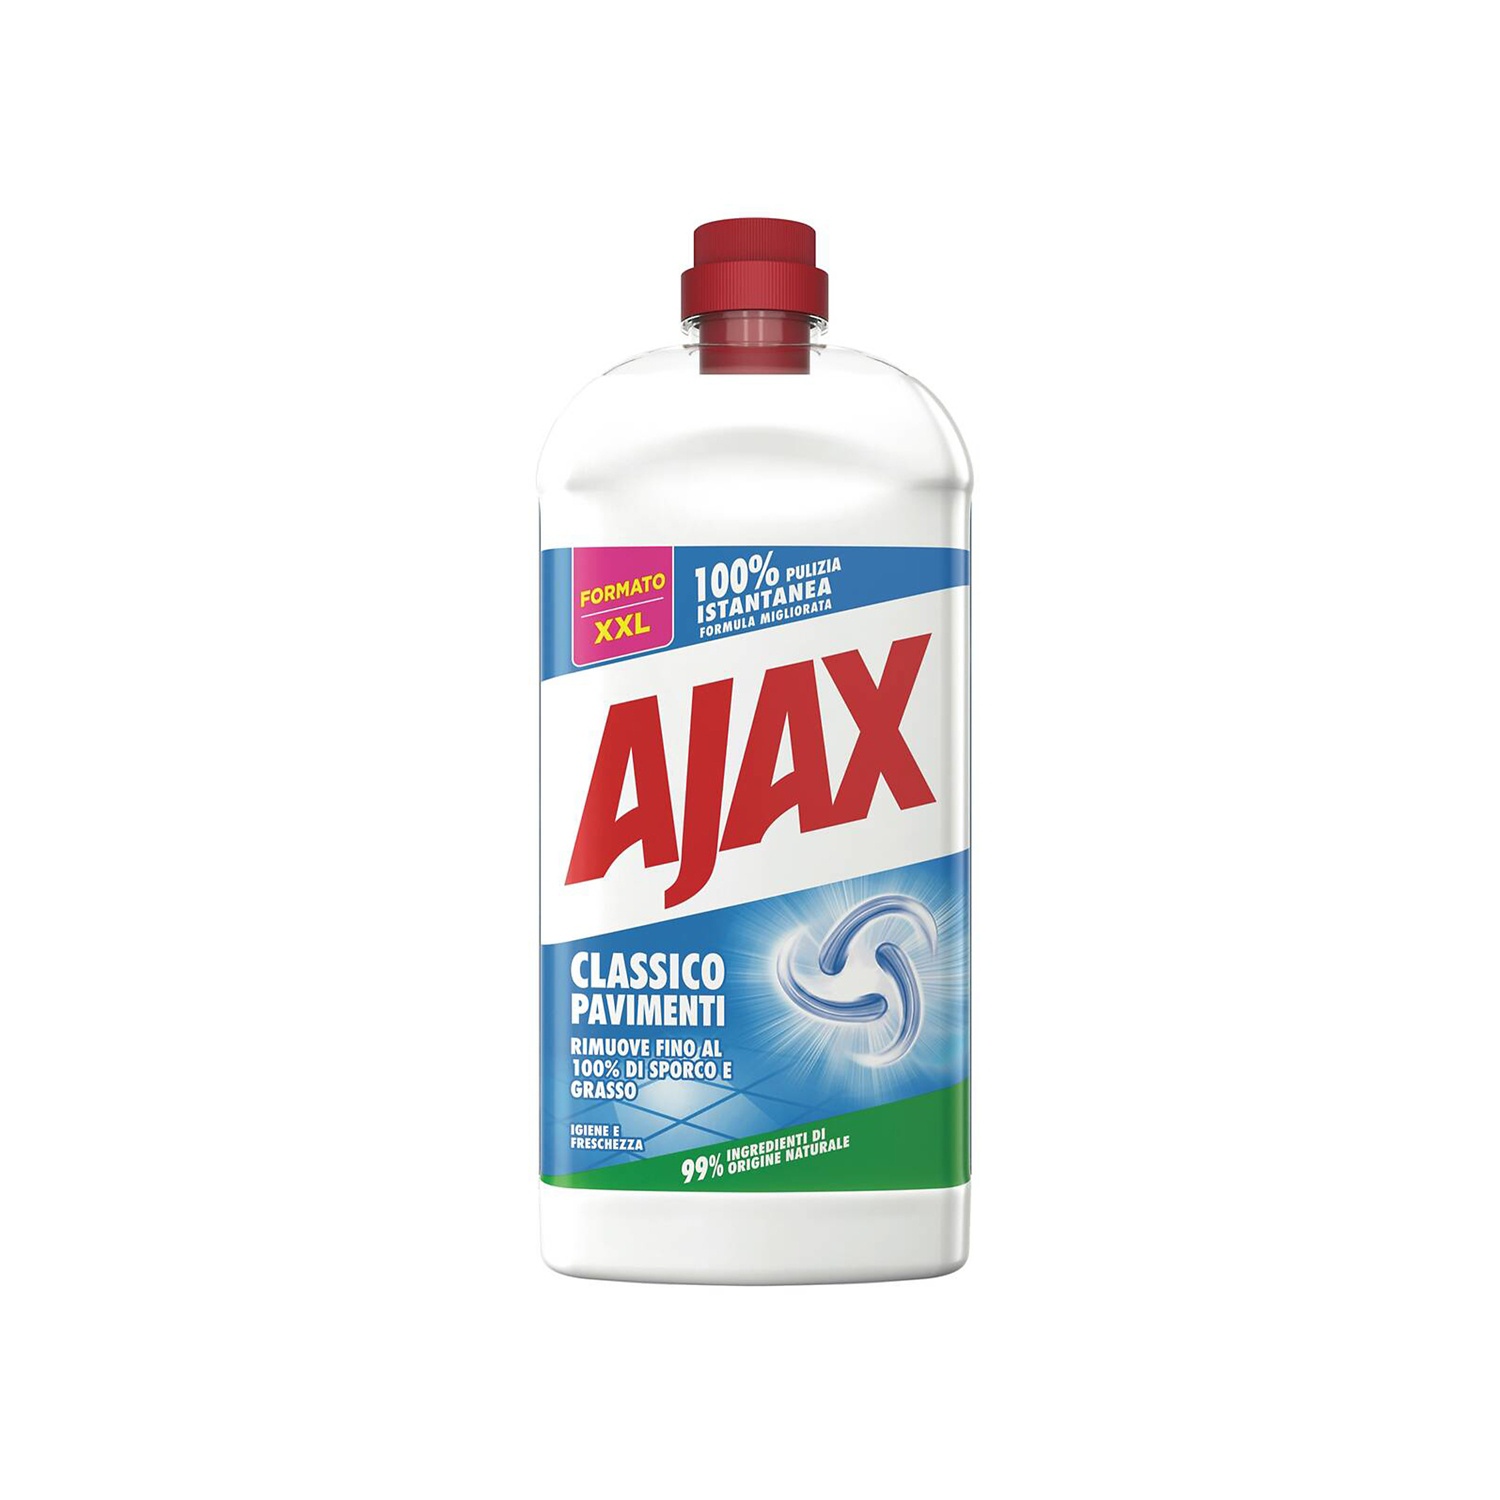 AJAX Detergente pavimenti